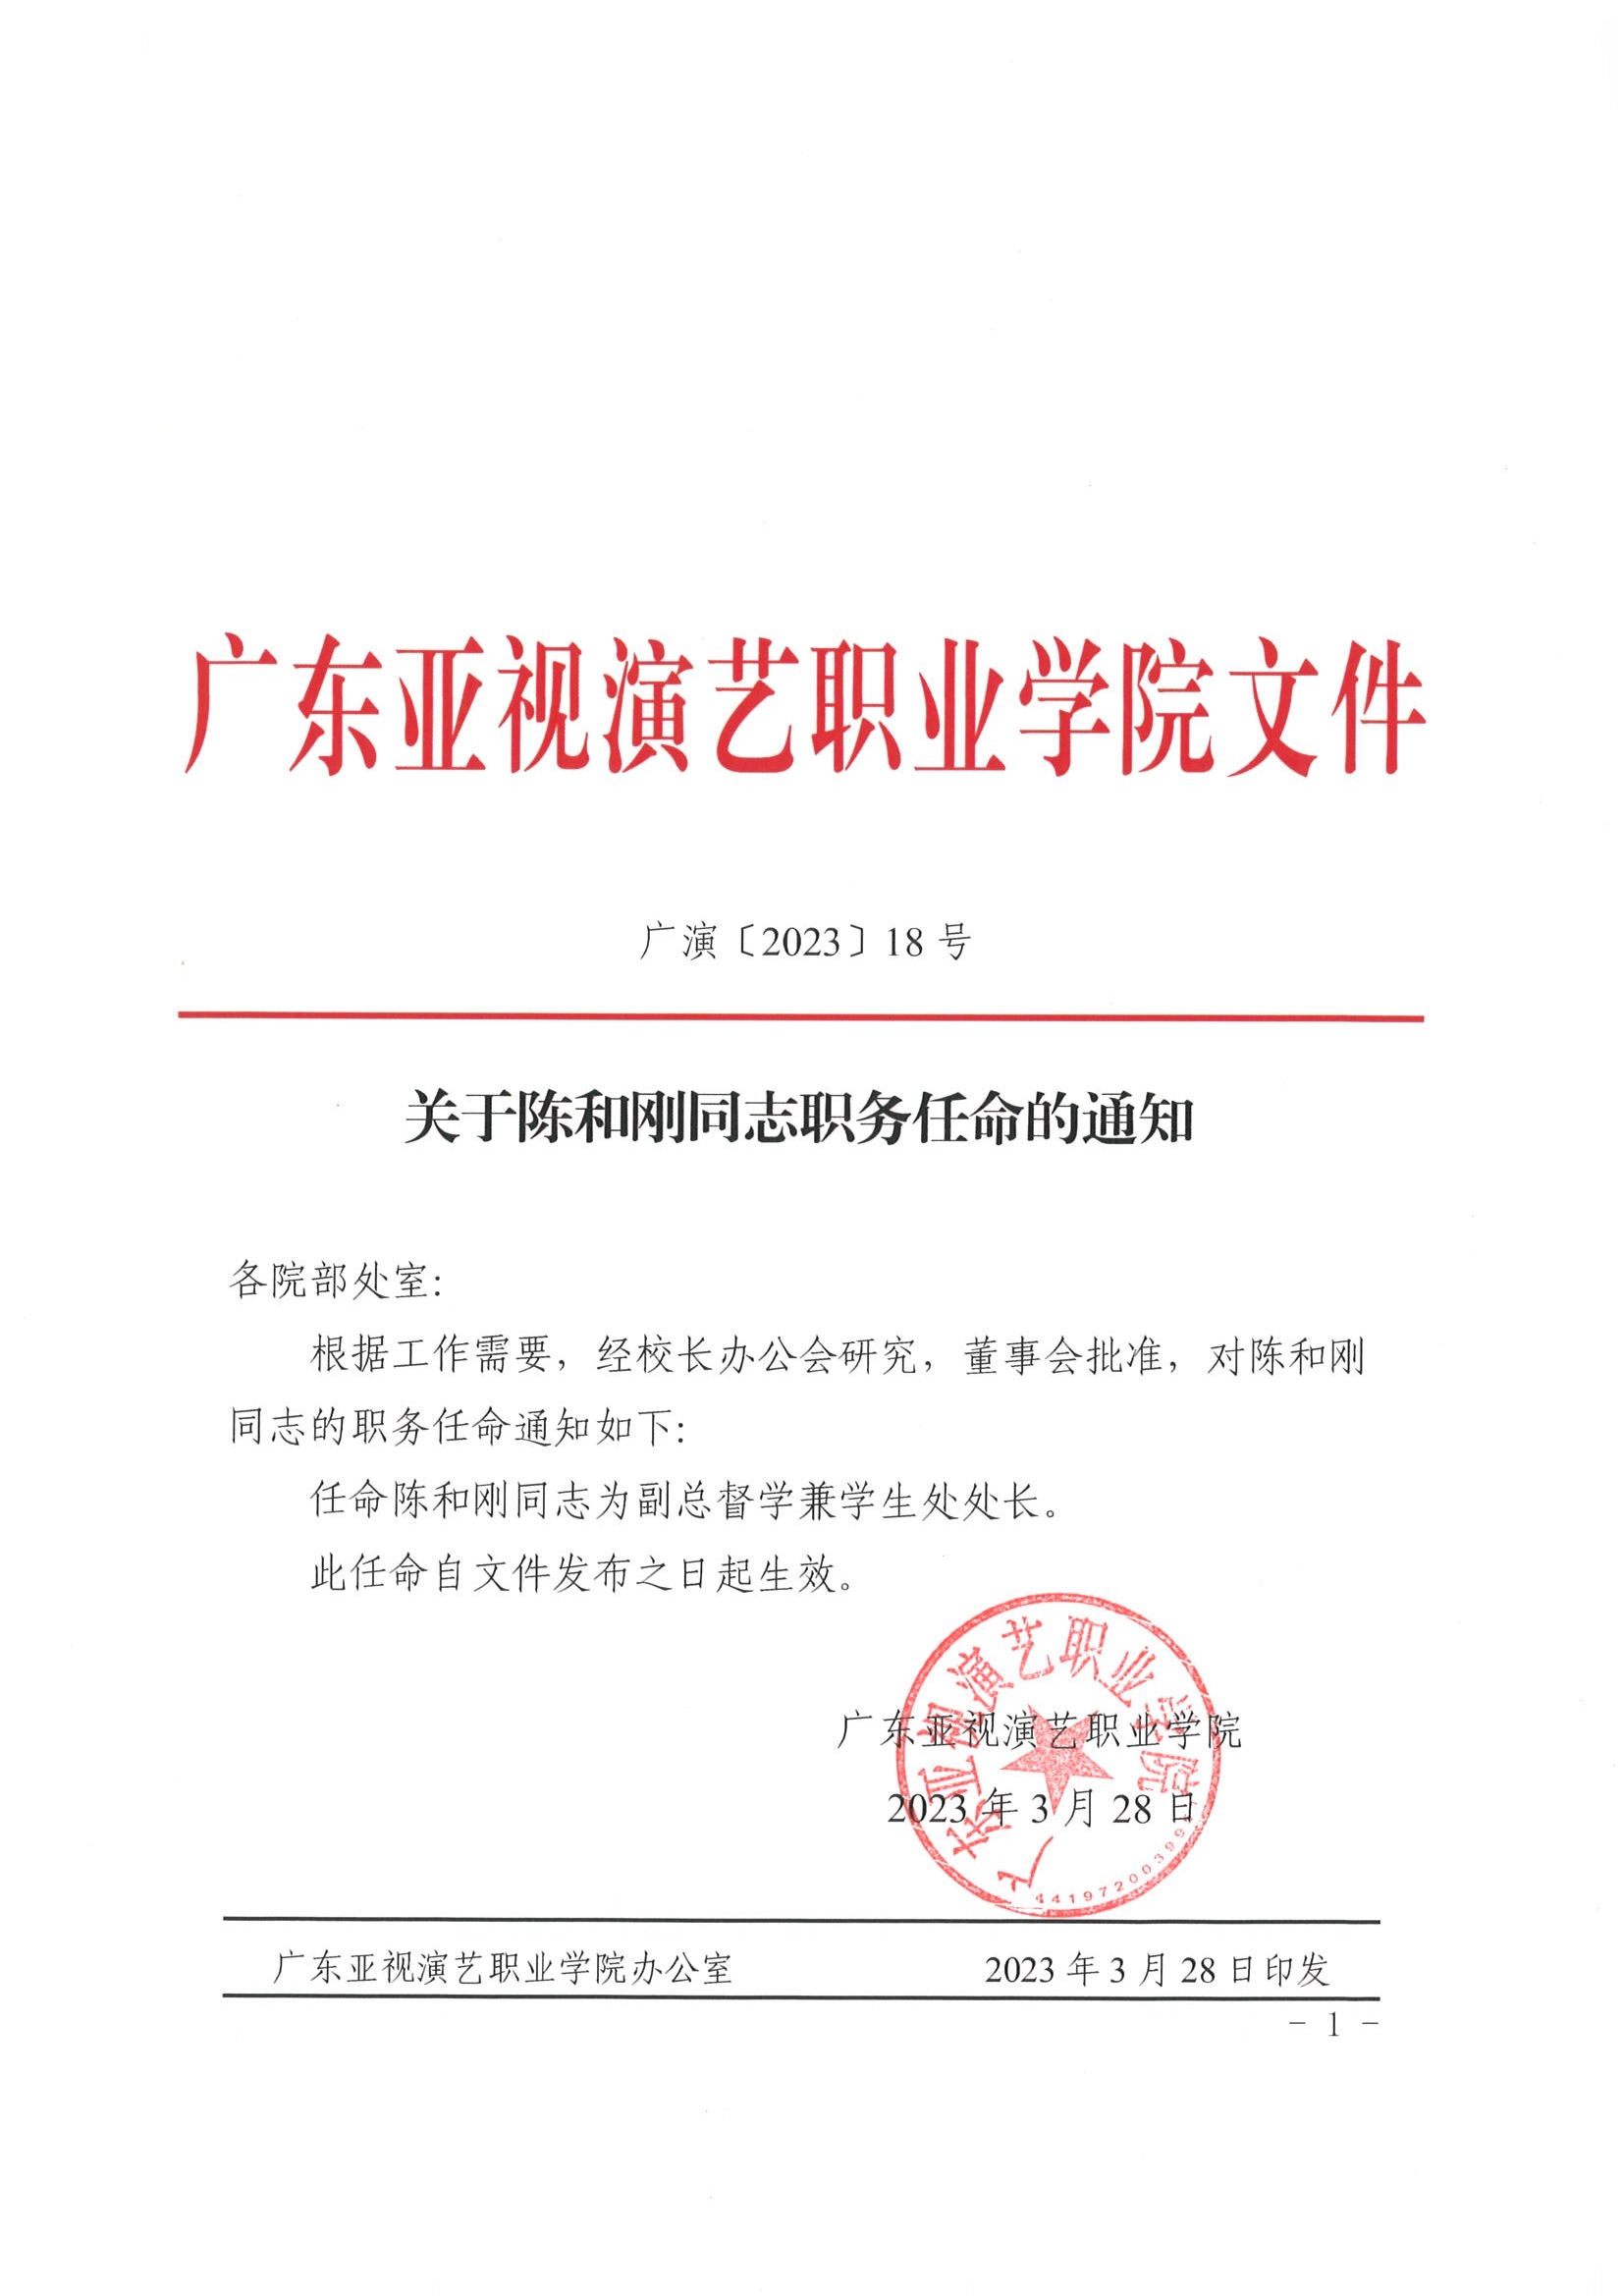 关于陈和刚同志职务任命的通知2023.3.28.jpg